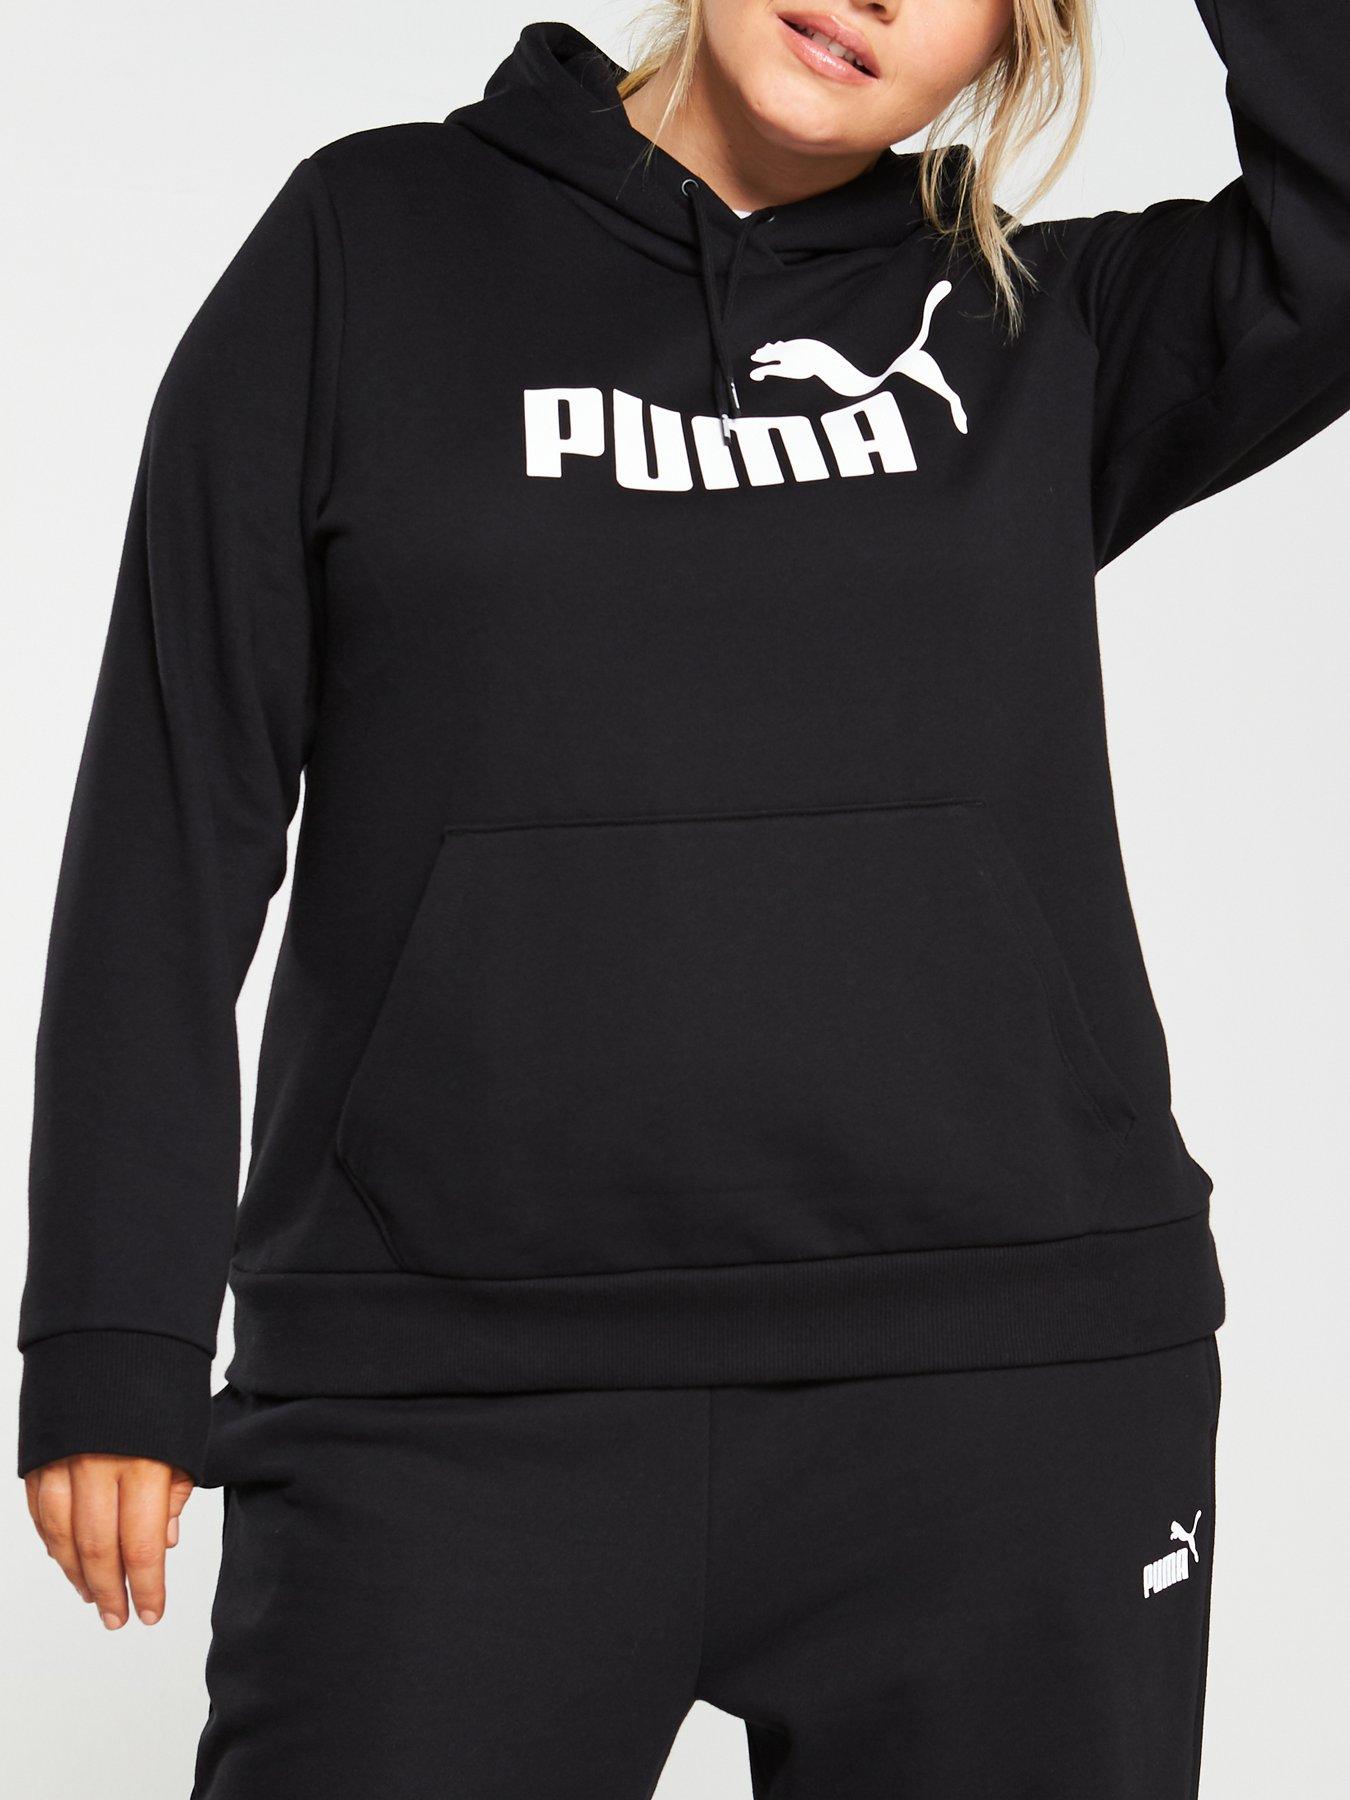 black puma jumper womens